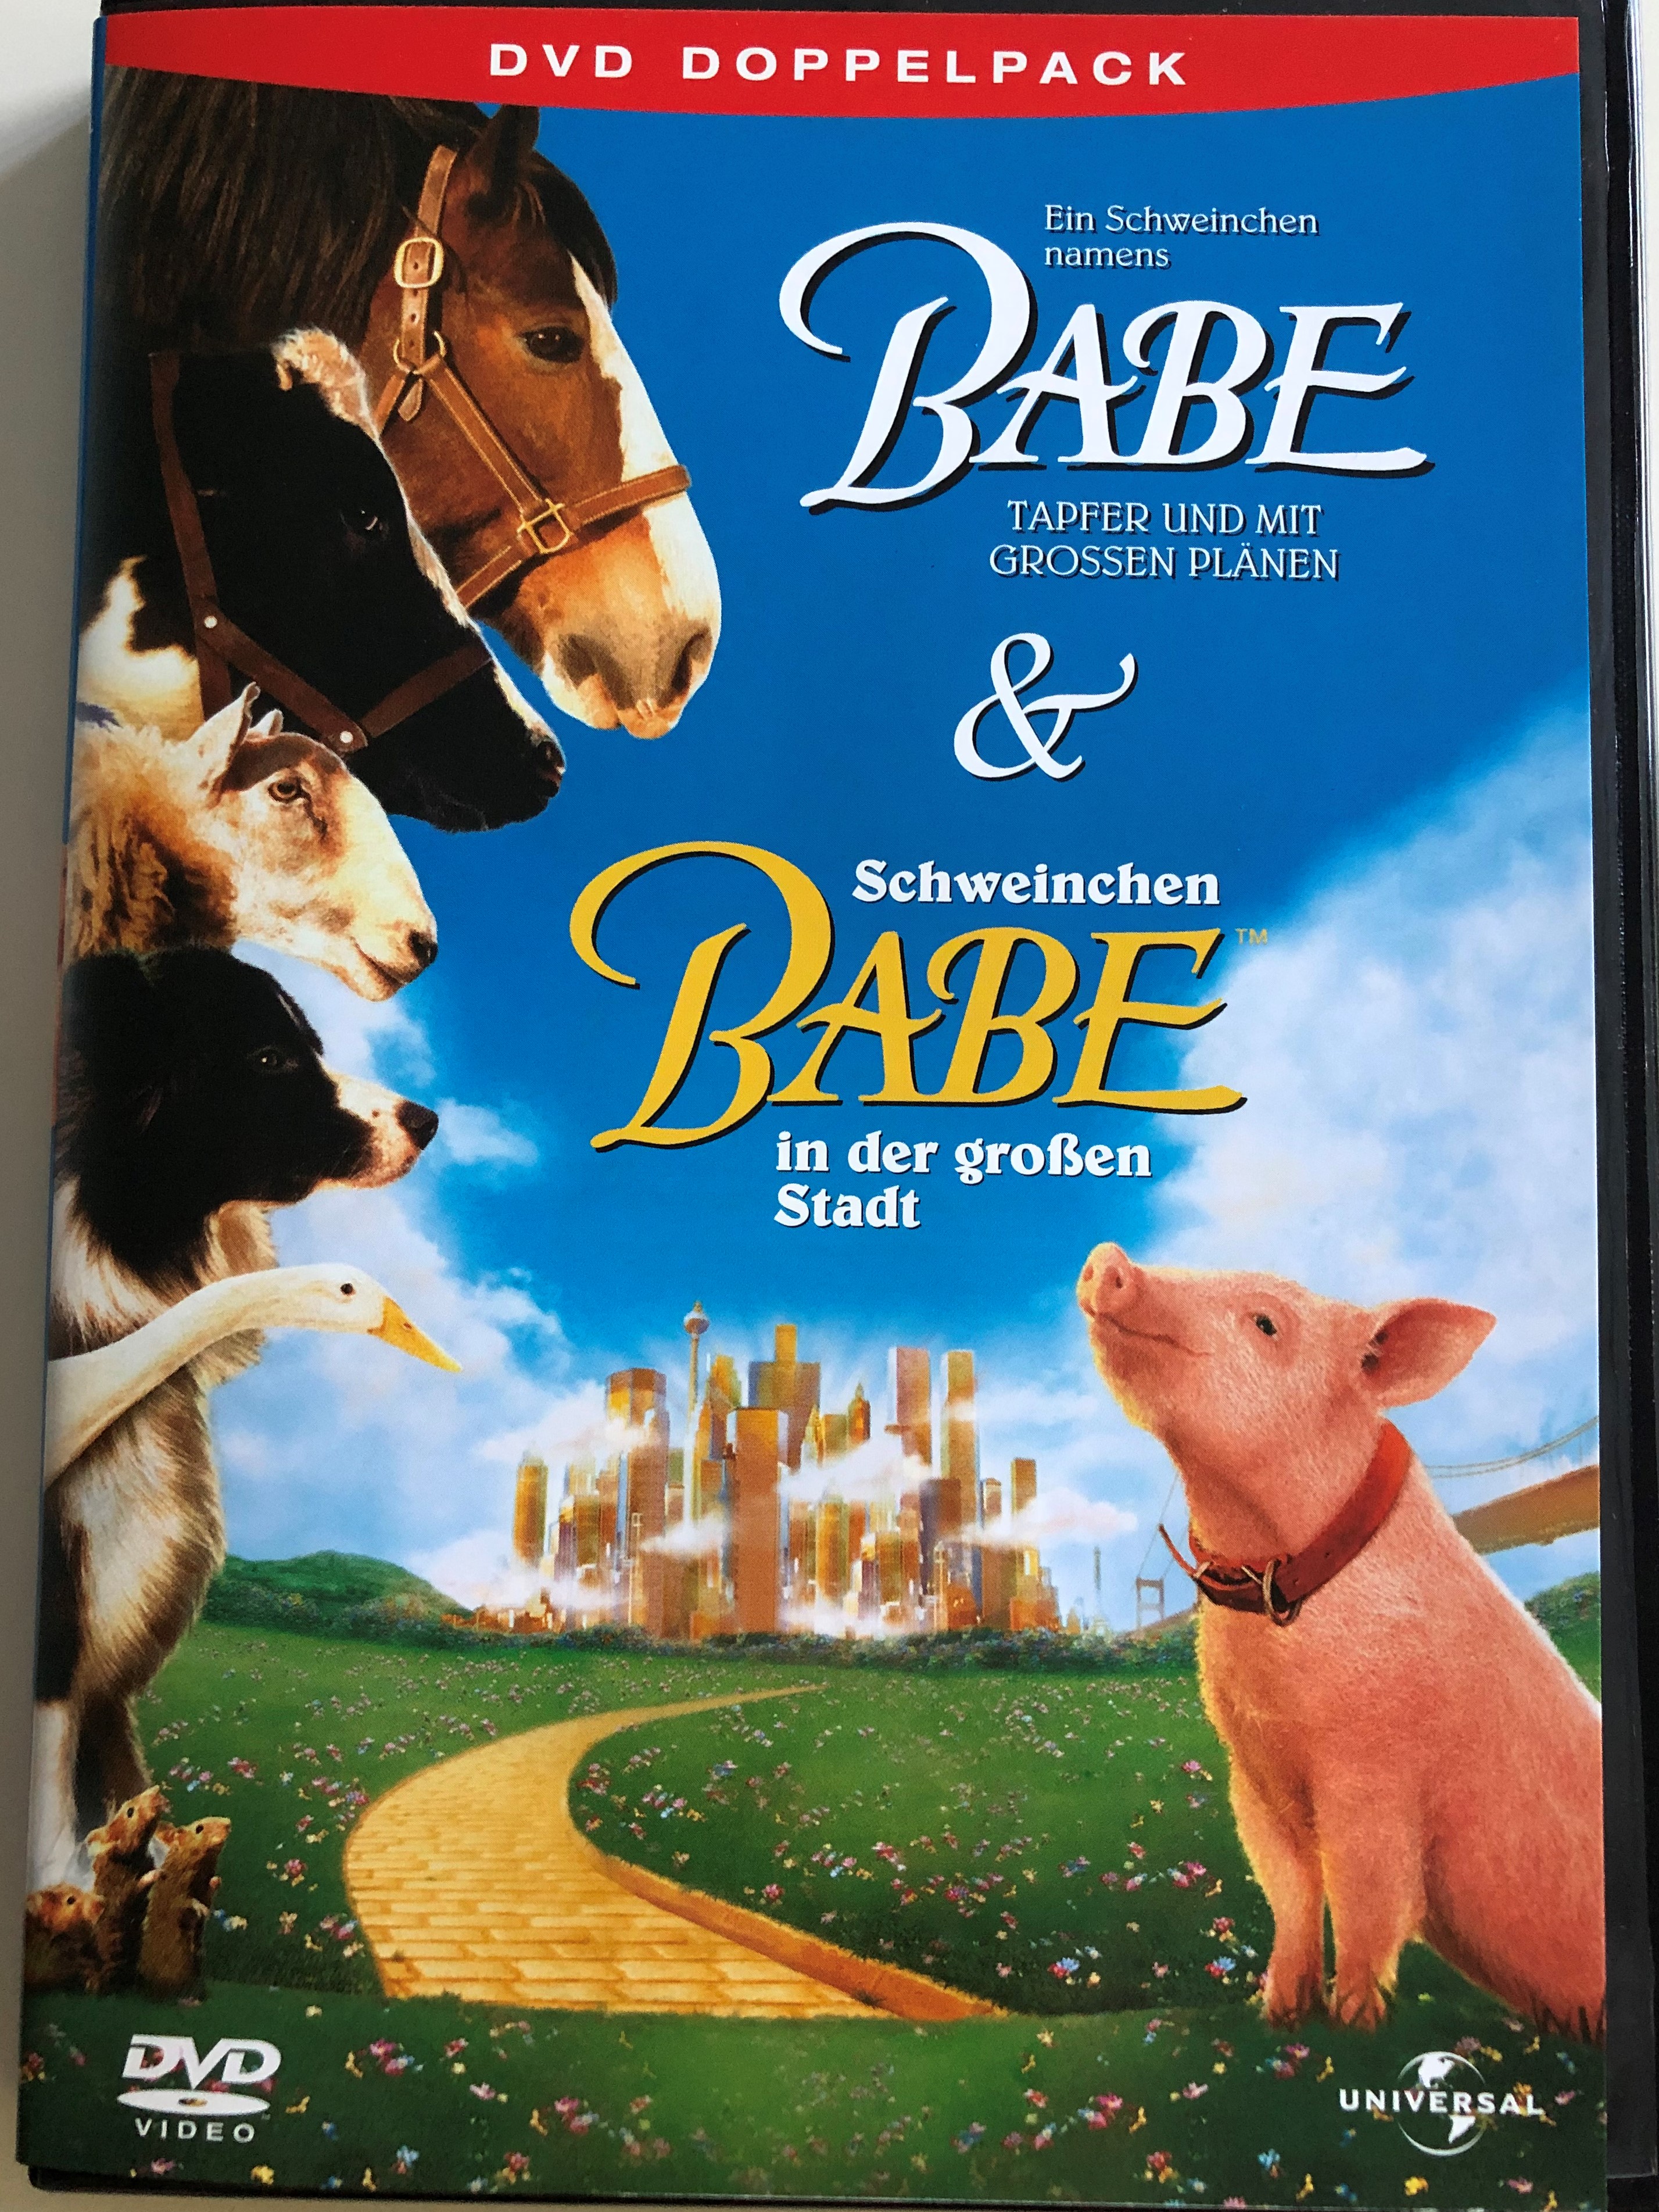 babe-babe-pig-in-the-city-dvd-double-pack-2004-ein-schweinchen-namens-babe-schweinchen-babe-in-der-gro-en-stadt-dvd-doppelpack-directed-by-chris-noonan-starring-james-cromwell-magda-szubanski-1-.jpg